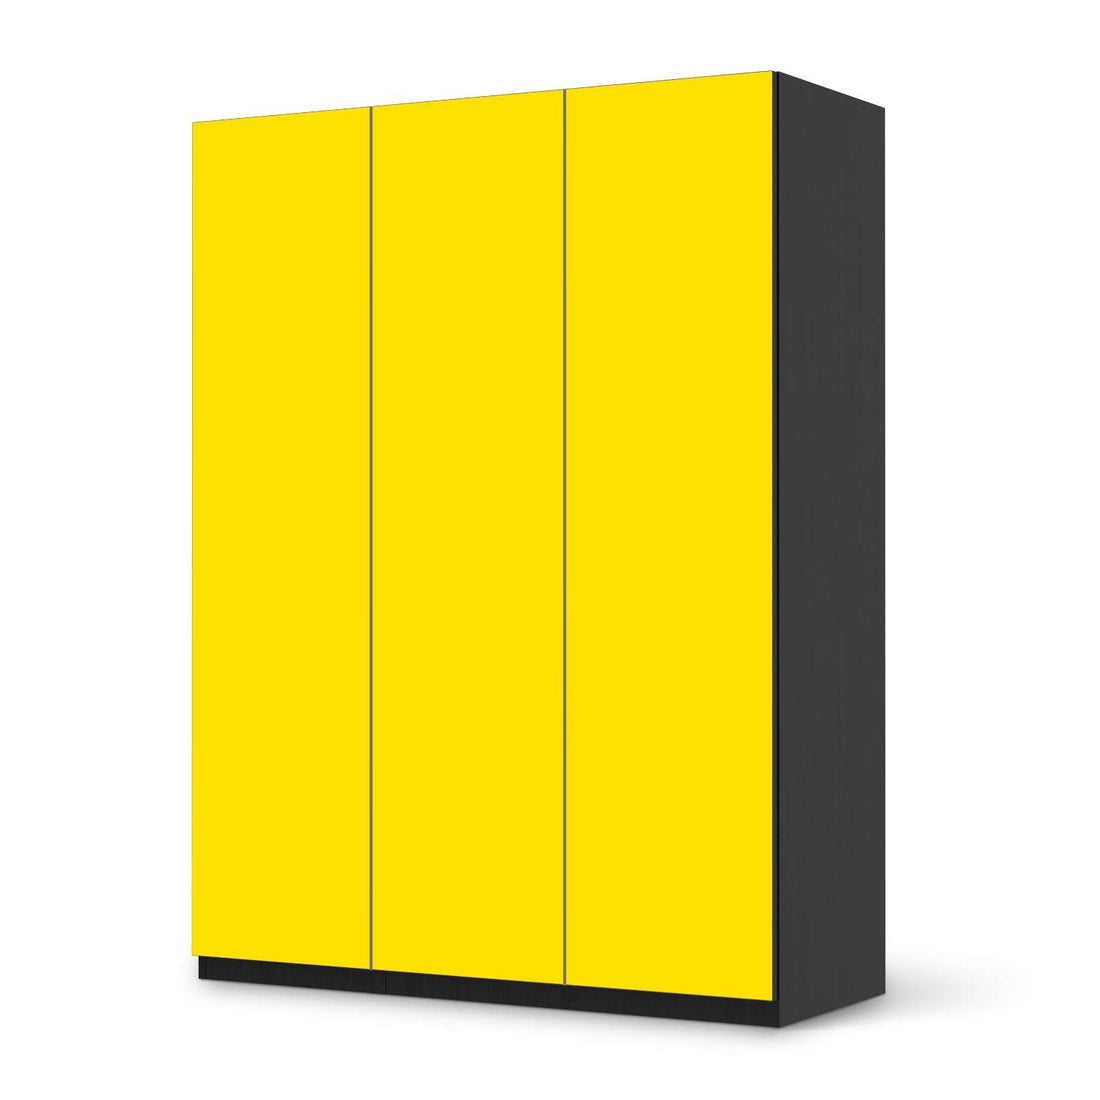 Folie für Möbel Gelb Dark - IKEA Pax Schrank 201 cm Höhe - 3 Türen - schwarz